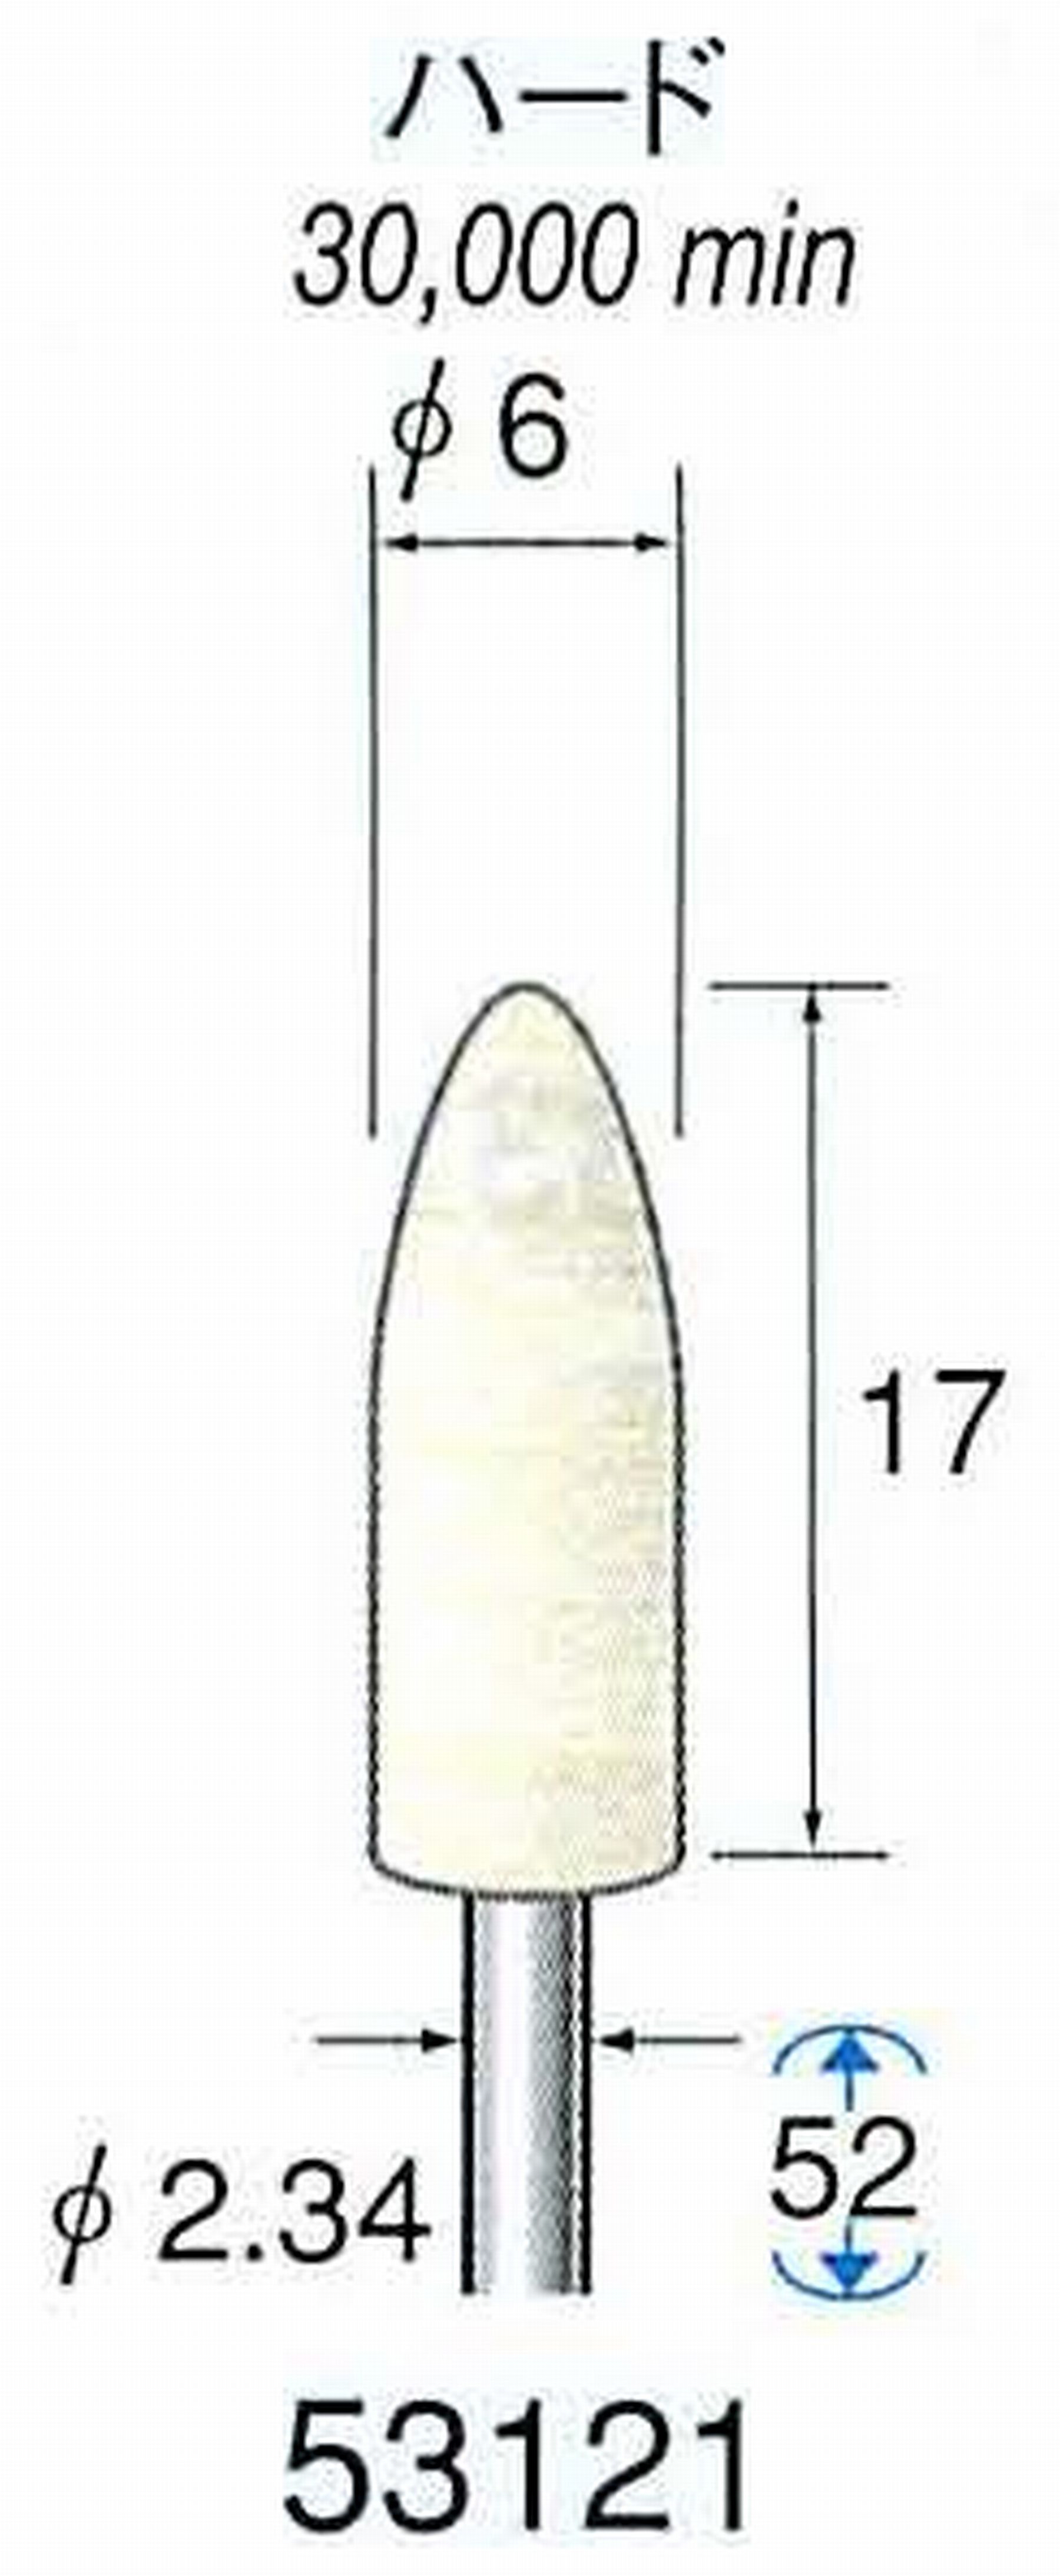 ナカニシ/NAKANISHI フェルトバフ ハード 軸径(シャンク)φ2.34mm 53121